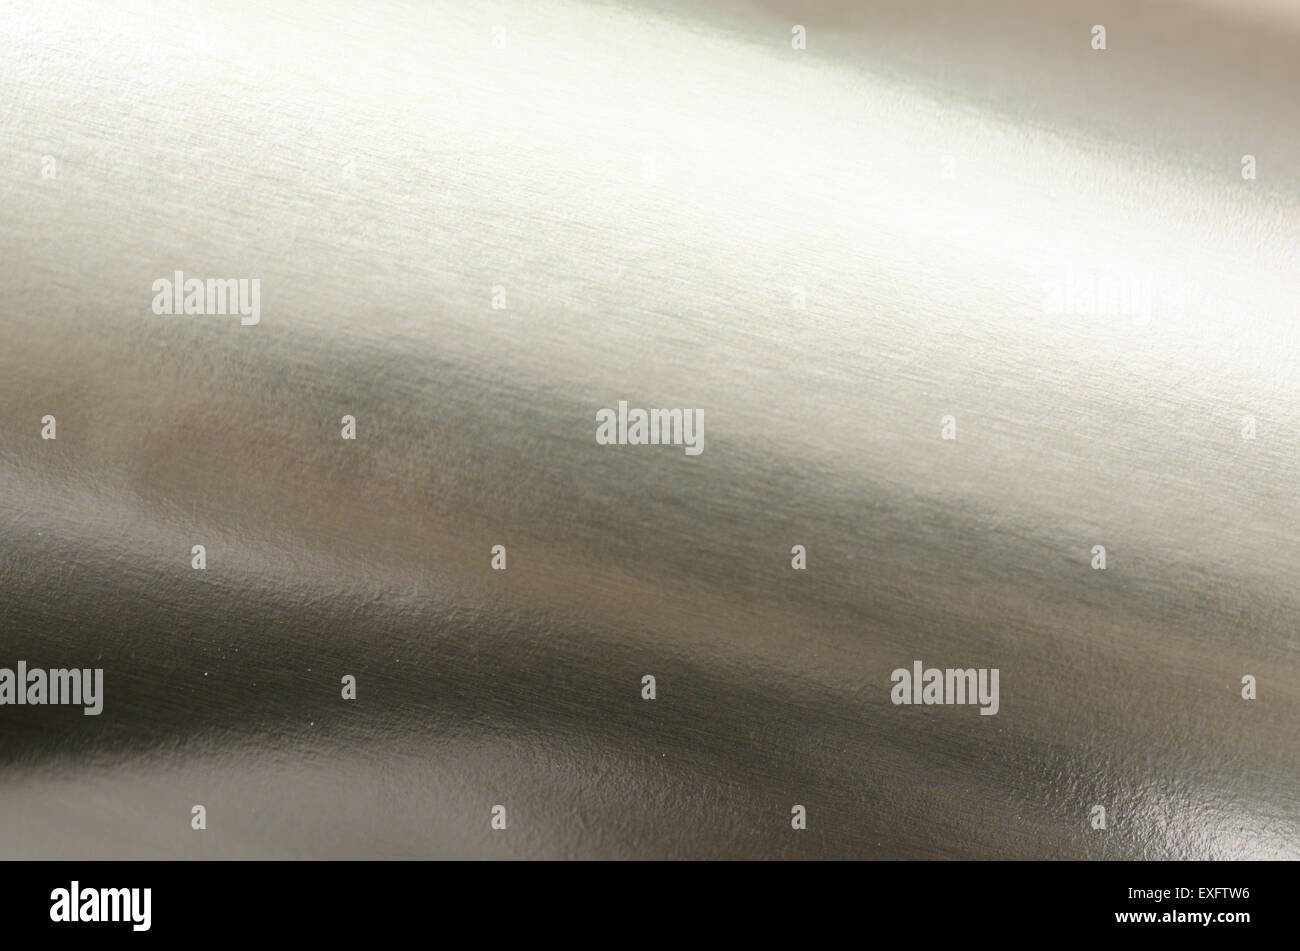 Silber abstrakt metallischen Hintergrundtextur Stockfoto